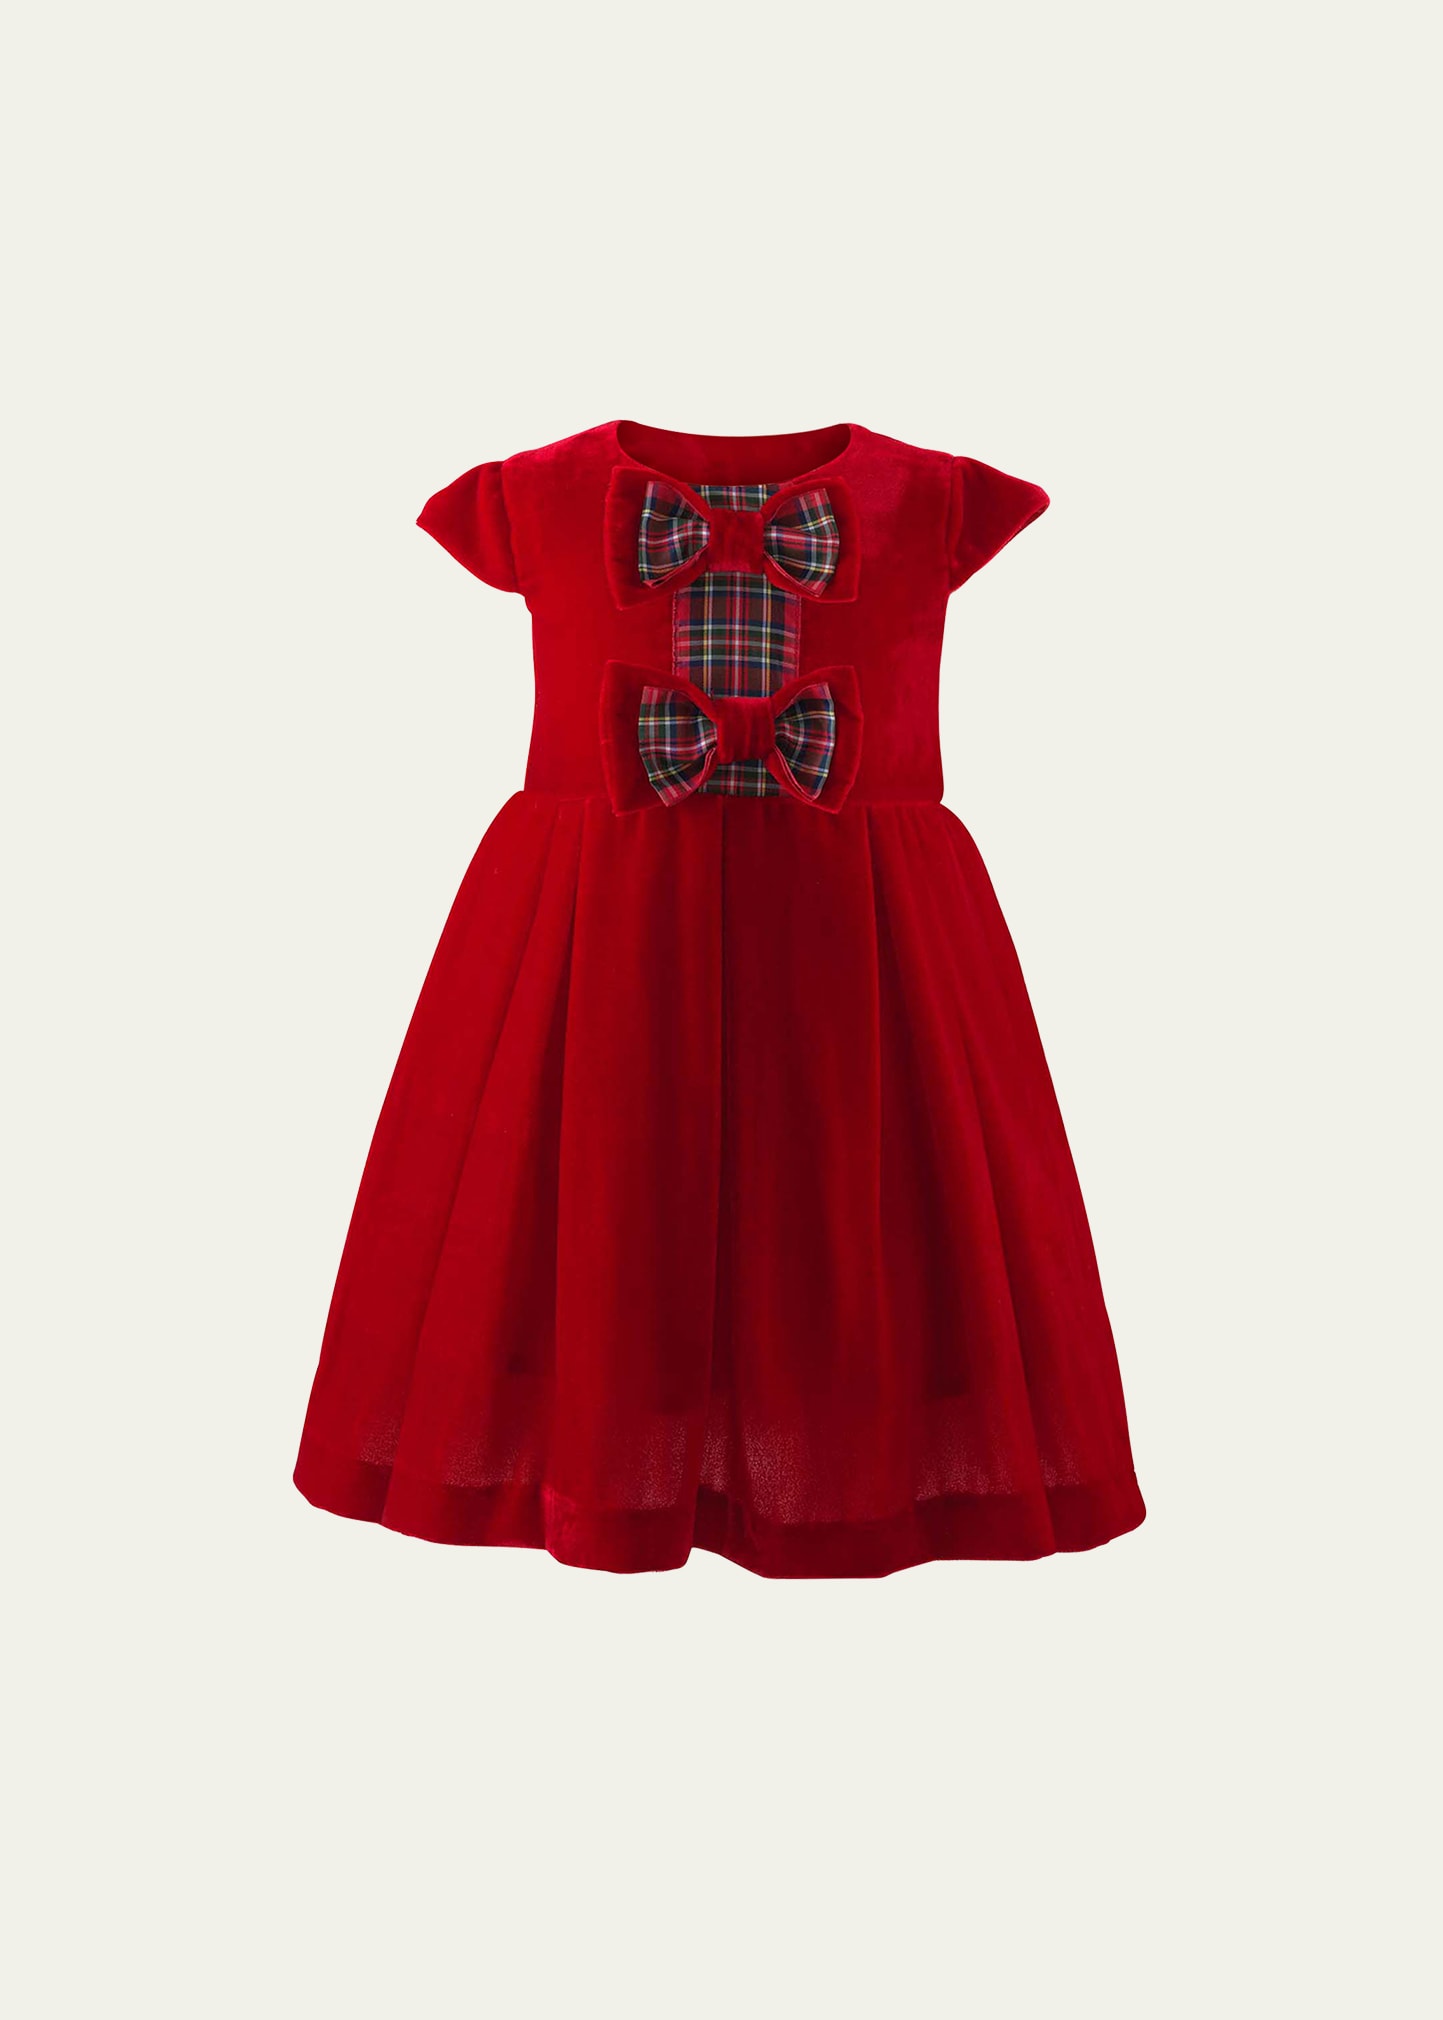 Girl's Bow Velvet Holiday Tartan Bow Dress, Size 6M-24M